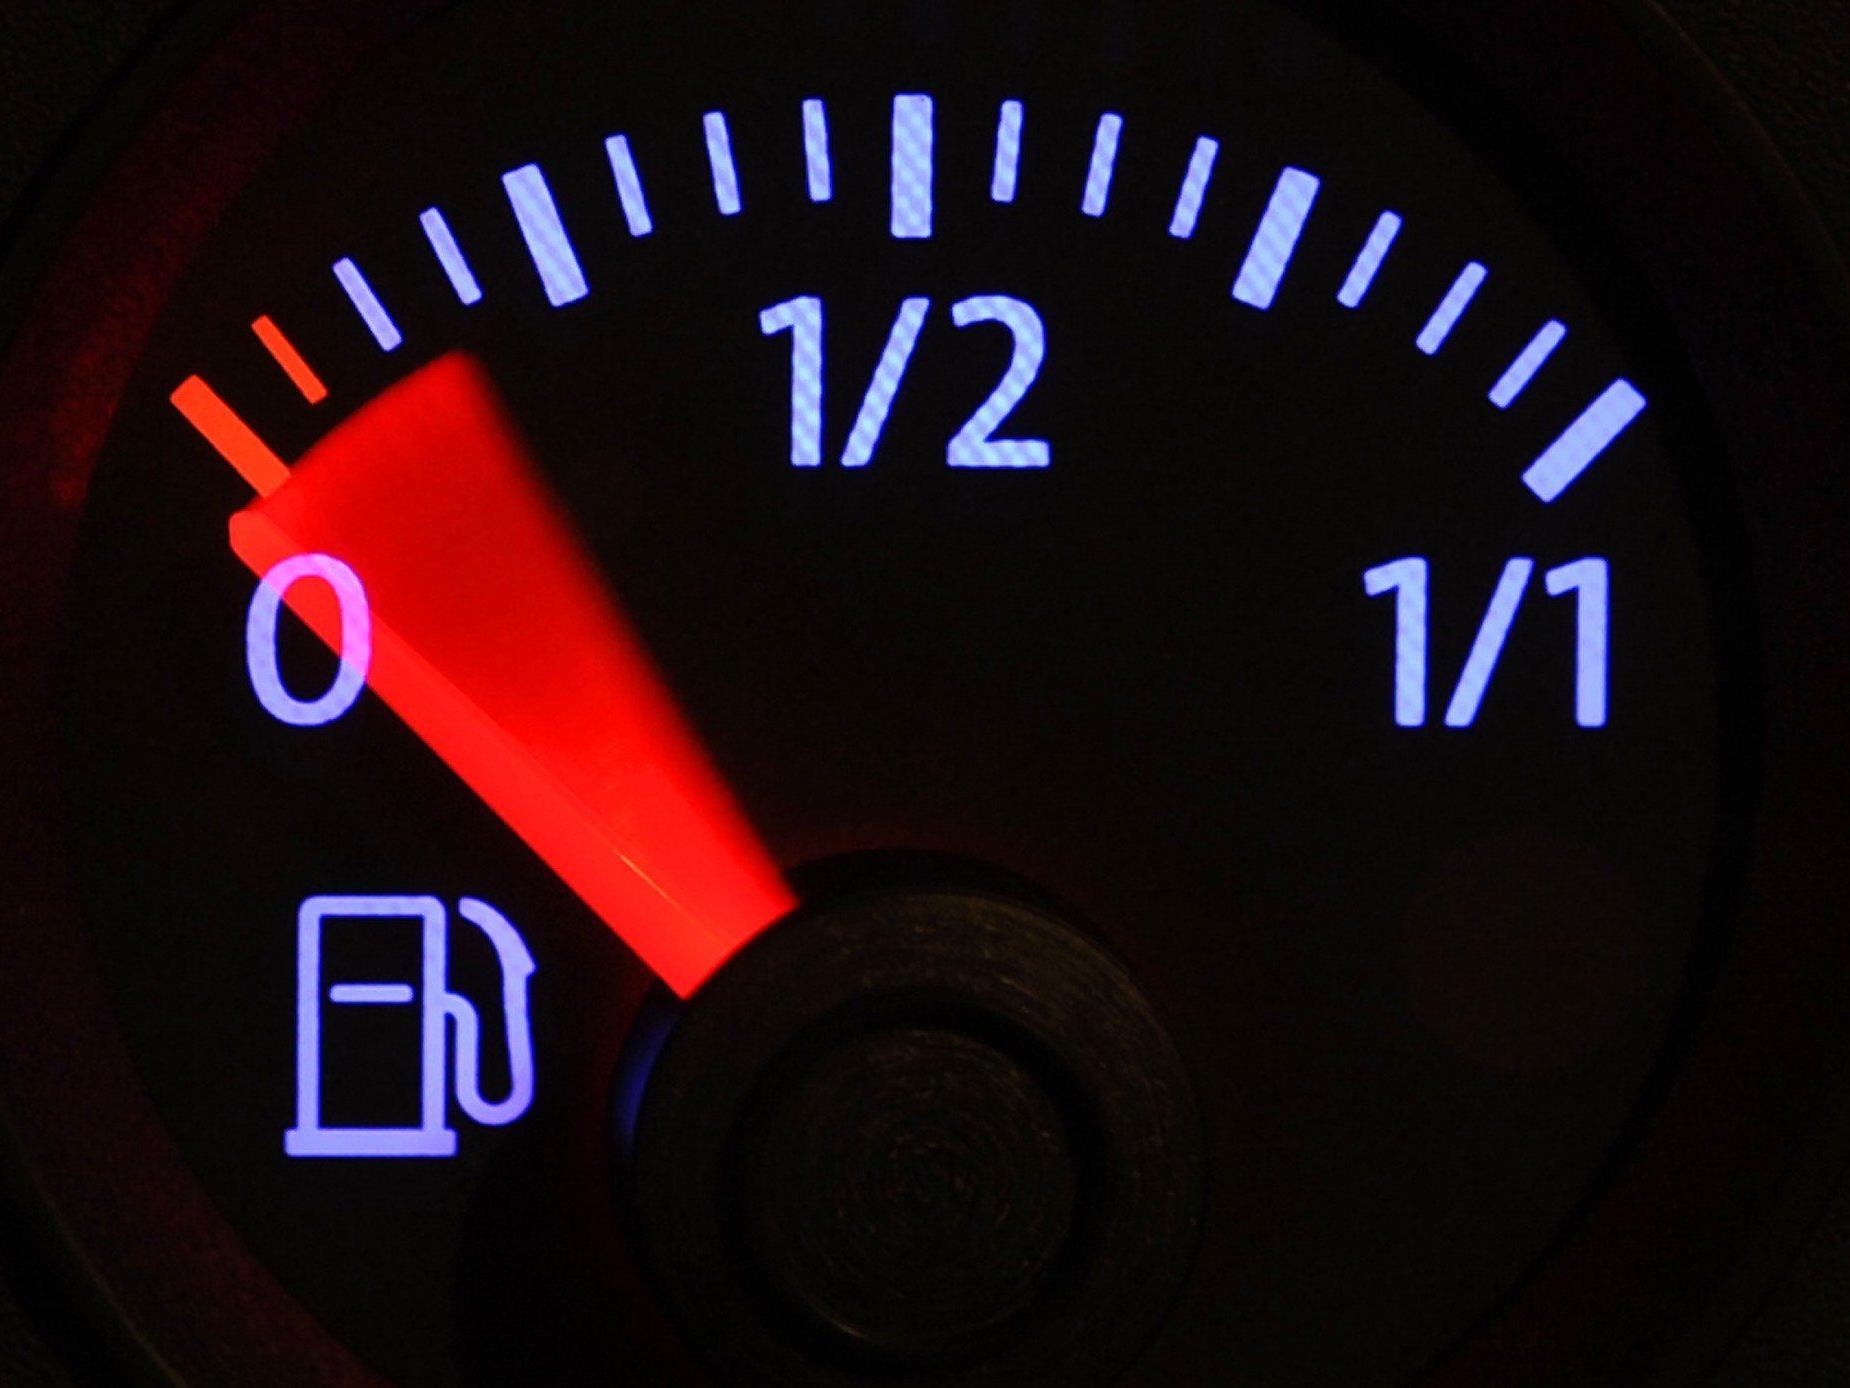 Klägerin: Fahrzeug verbrauche zu viel Treibstoff, weil die Einspar-Automatik nicht funktioniere.